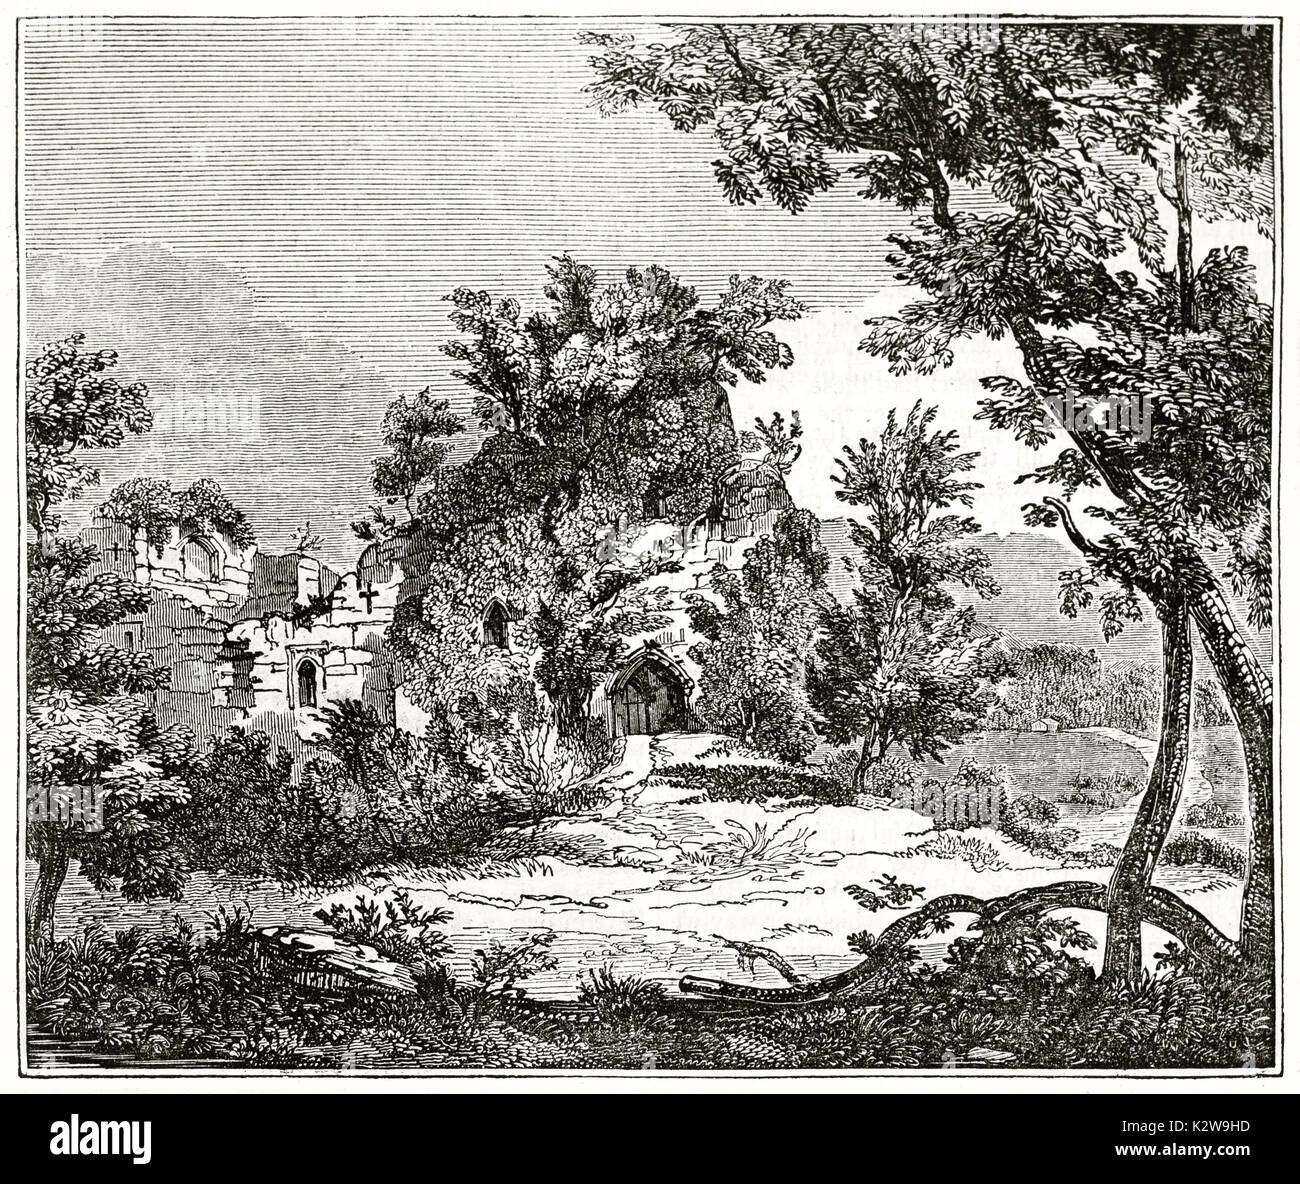 Alte Ansicht von Goodrich Castle Ruins, England. Von unbekannter Autor, auf Penny Magazine, London, 1835 veröffentlicht. Stockfoto